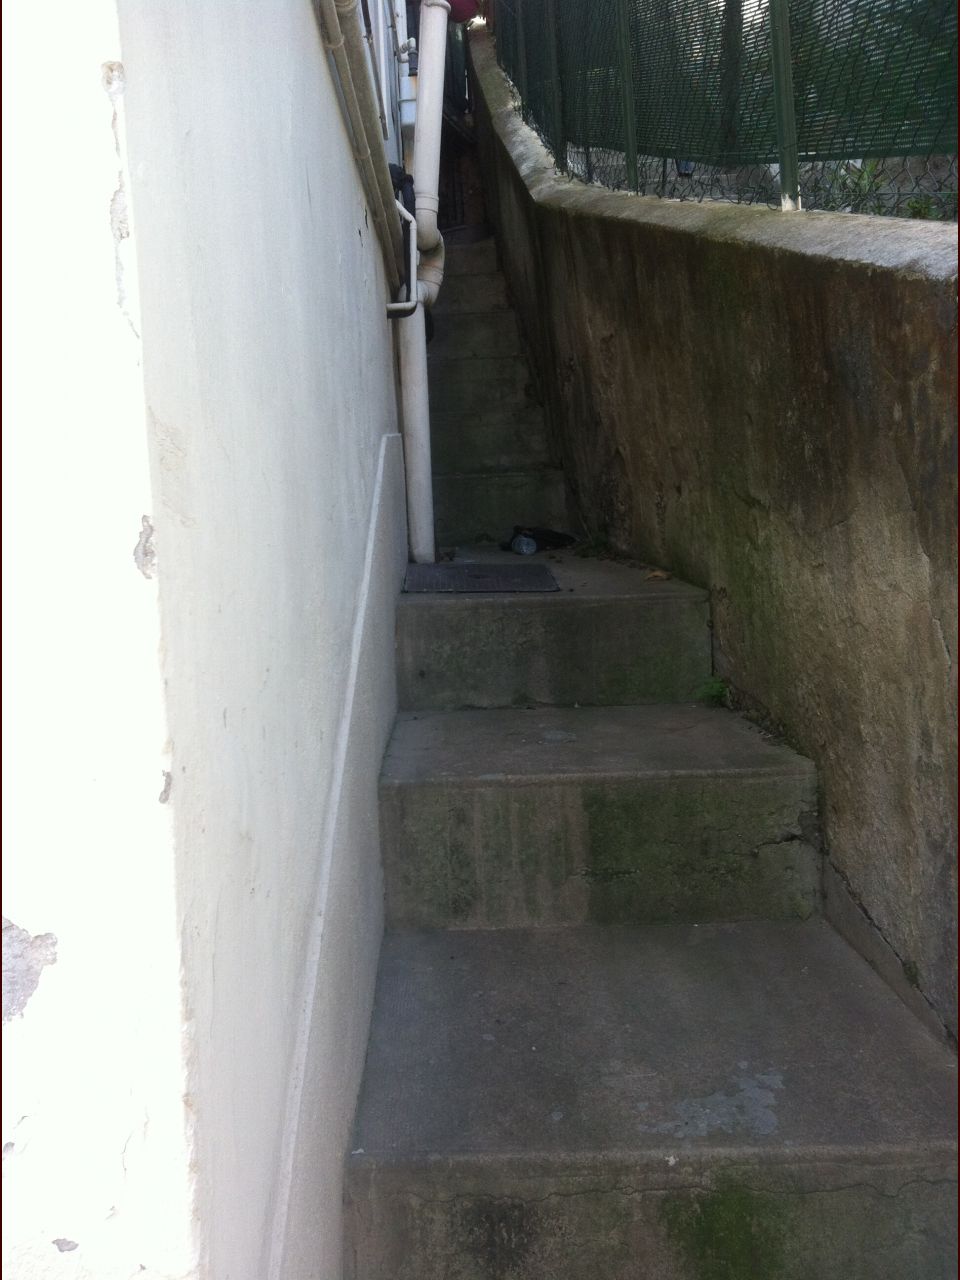 Le mur de la cuisine avec une bouche d'gout contre le mur. En montant les escaliers sur la gauche on trouve la court du voisin (autre photo).